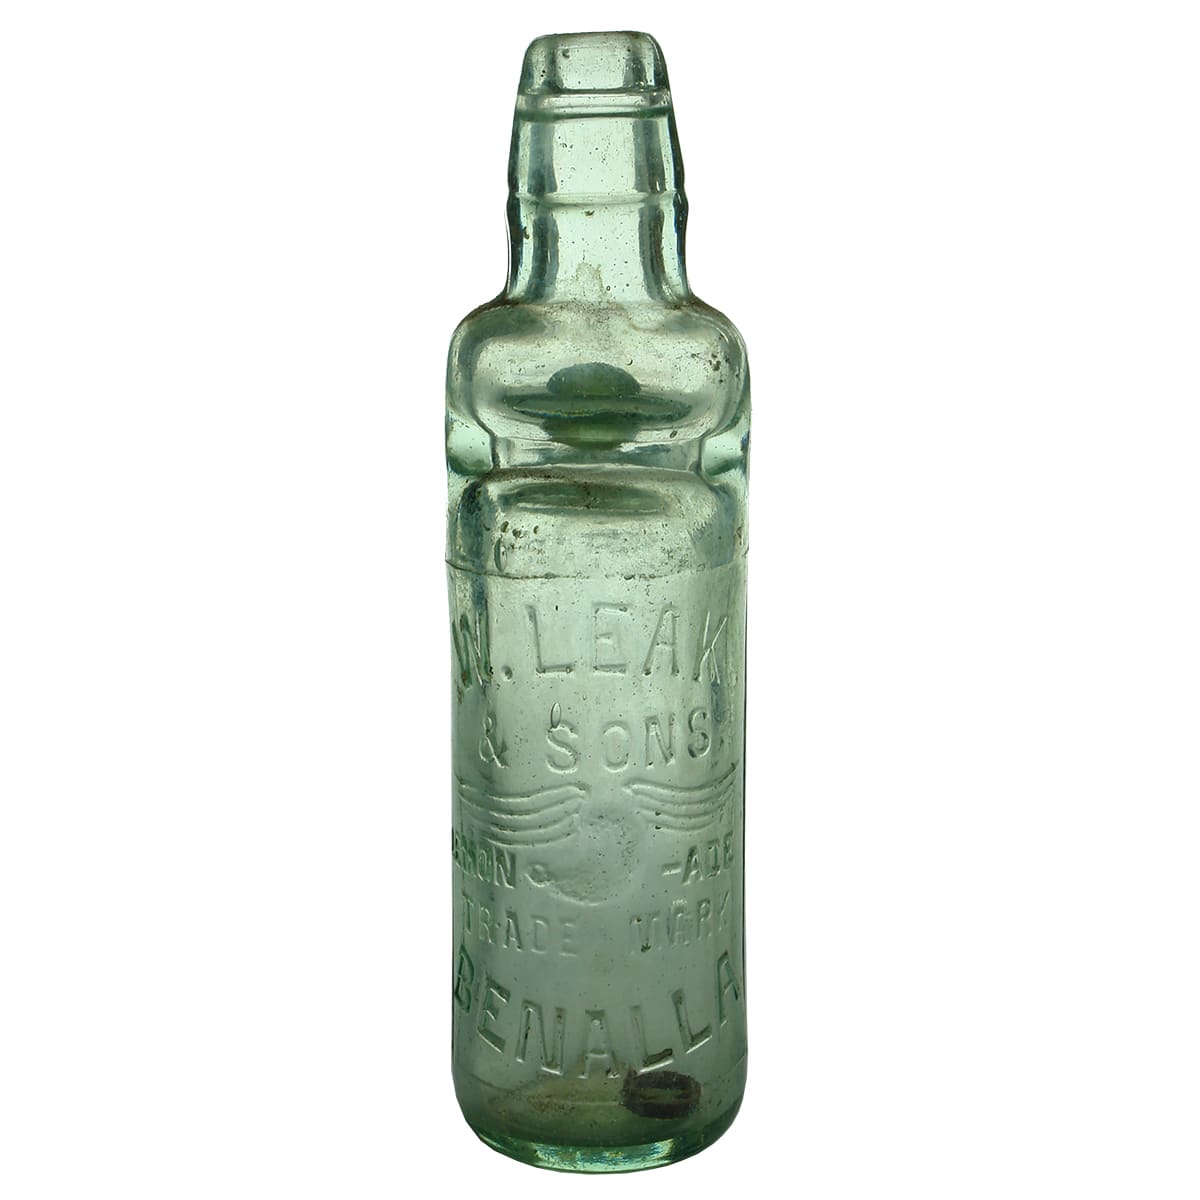 Codd. W. Leak & Sons, Benalla. All way pour. Aqua. 10 oz.